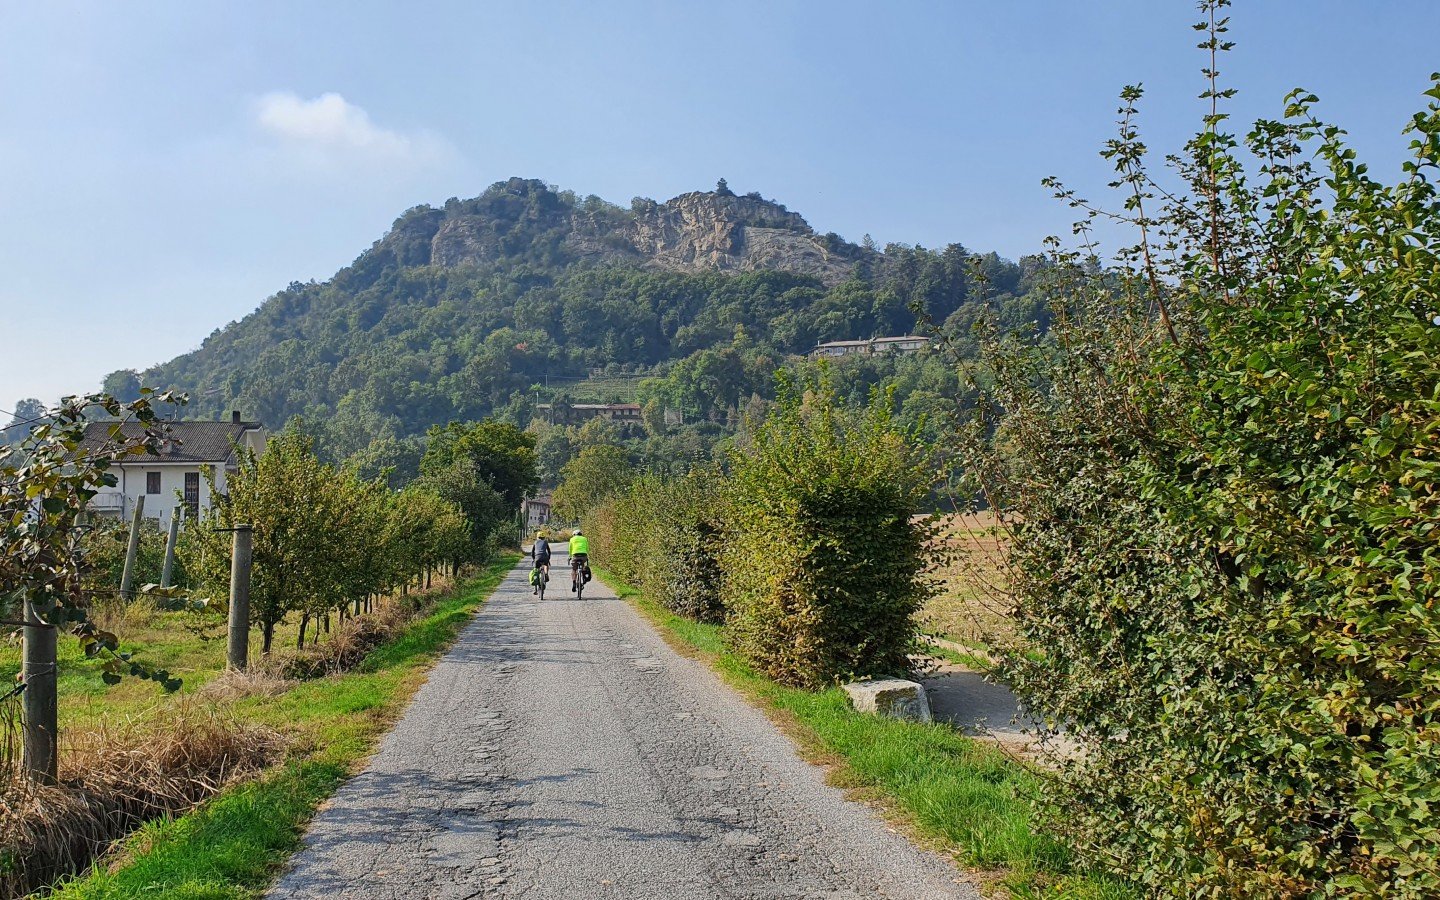 Immersi nella Riserva naturale della Rocca di Cavour